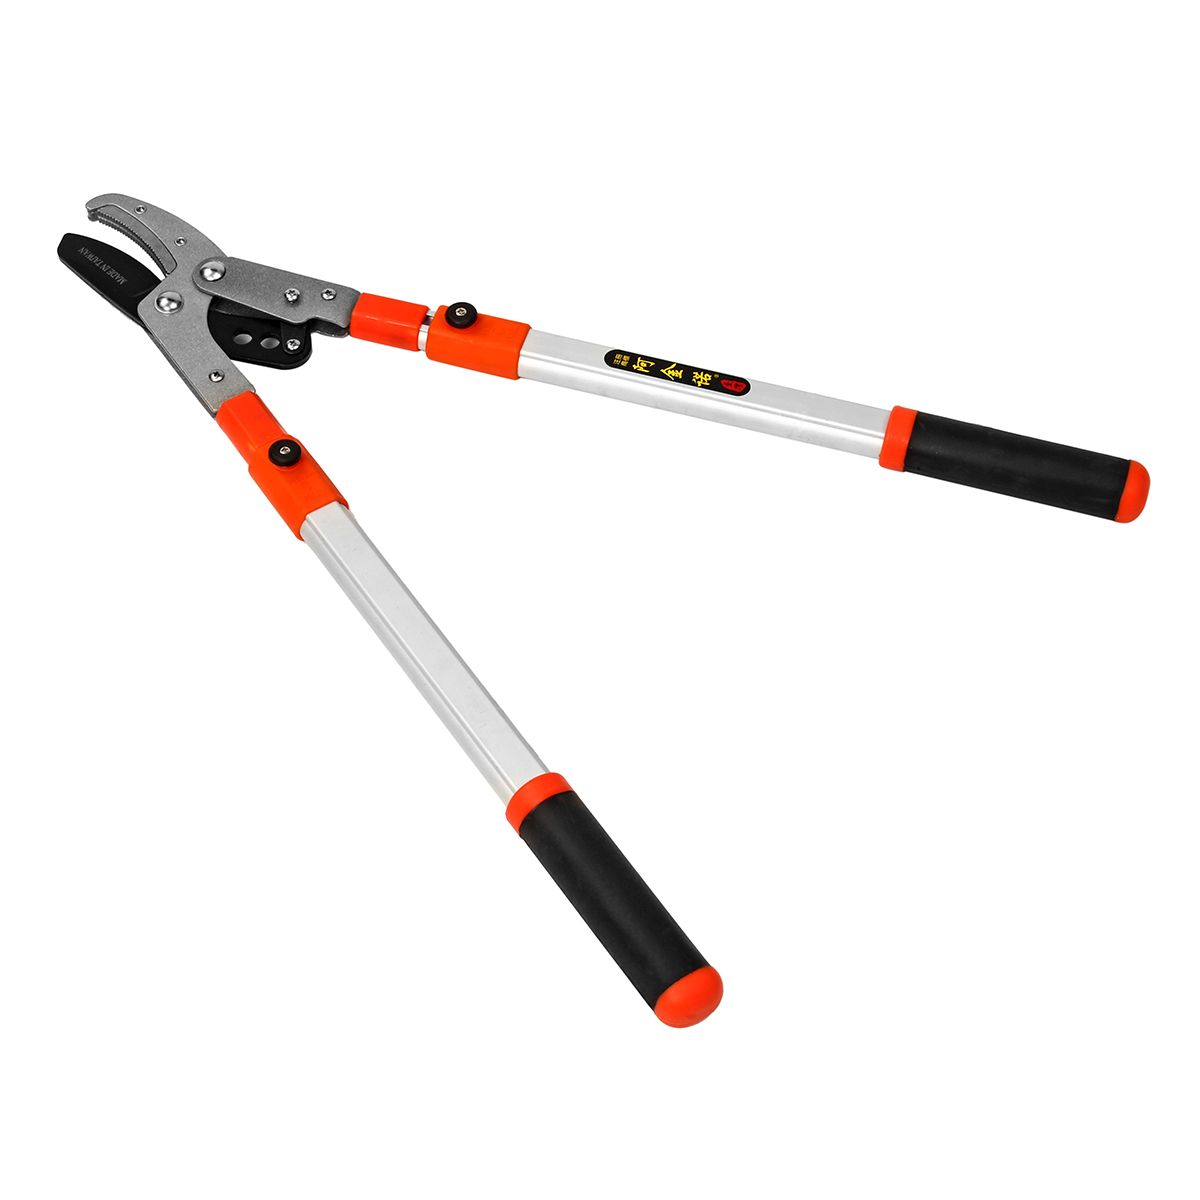 Steel-No-telescopicTelescopic-Lopper-Cutter-Extending-Ratchet-Branch-Shear-Pruner-Tool-1308056